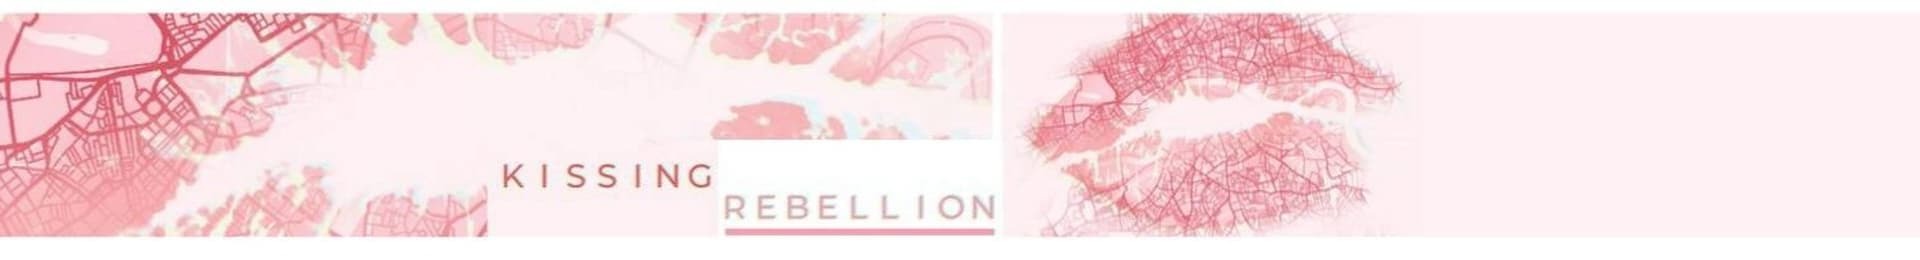 Kissing Rebellion - Carousel